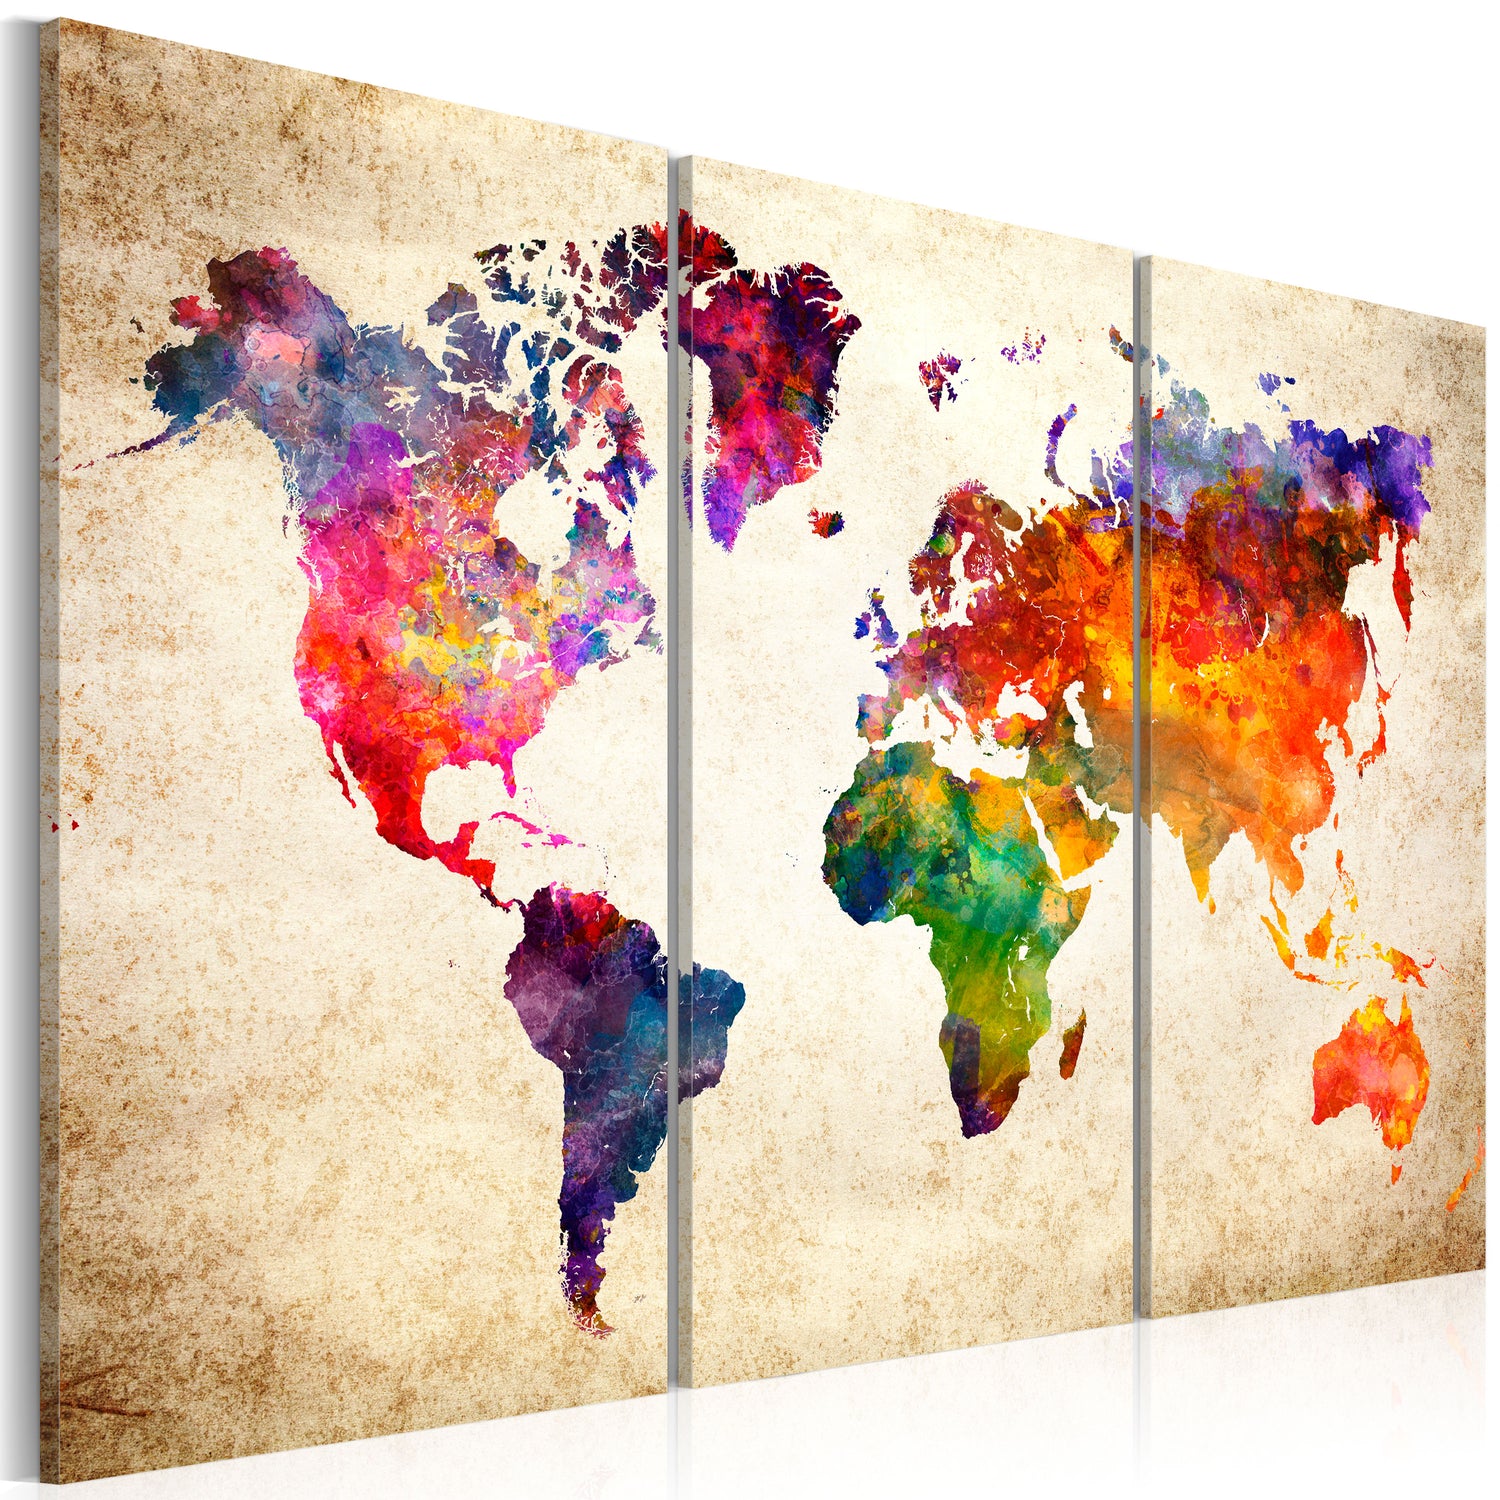 Weltkarte als Leinwandbild - Wandbild - The World's Map in Watercolor